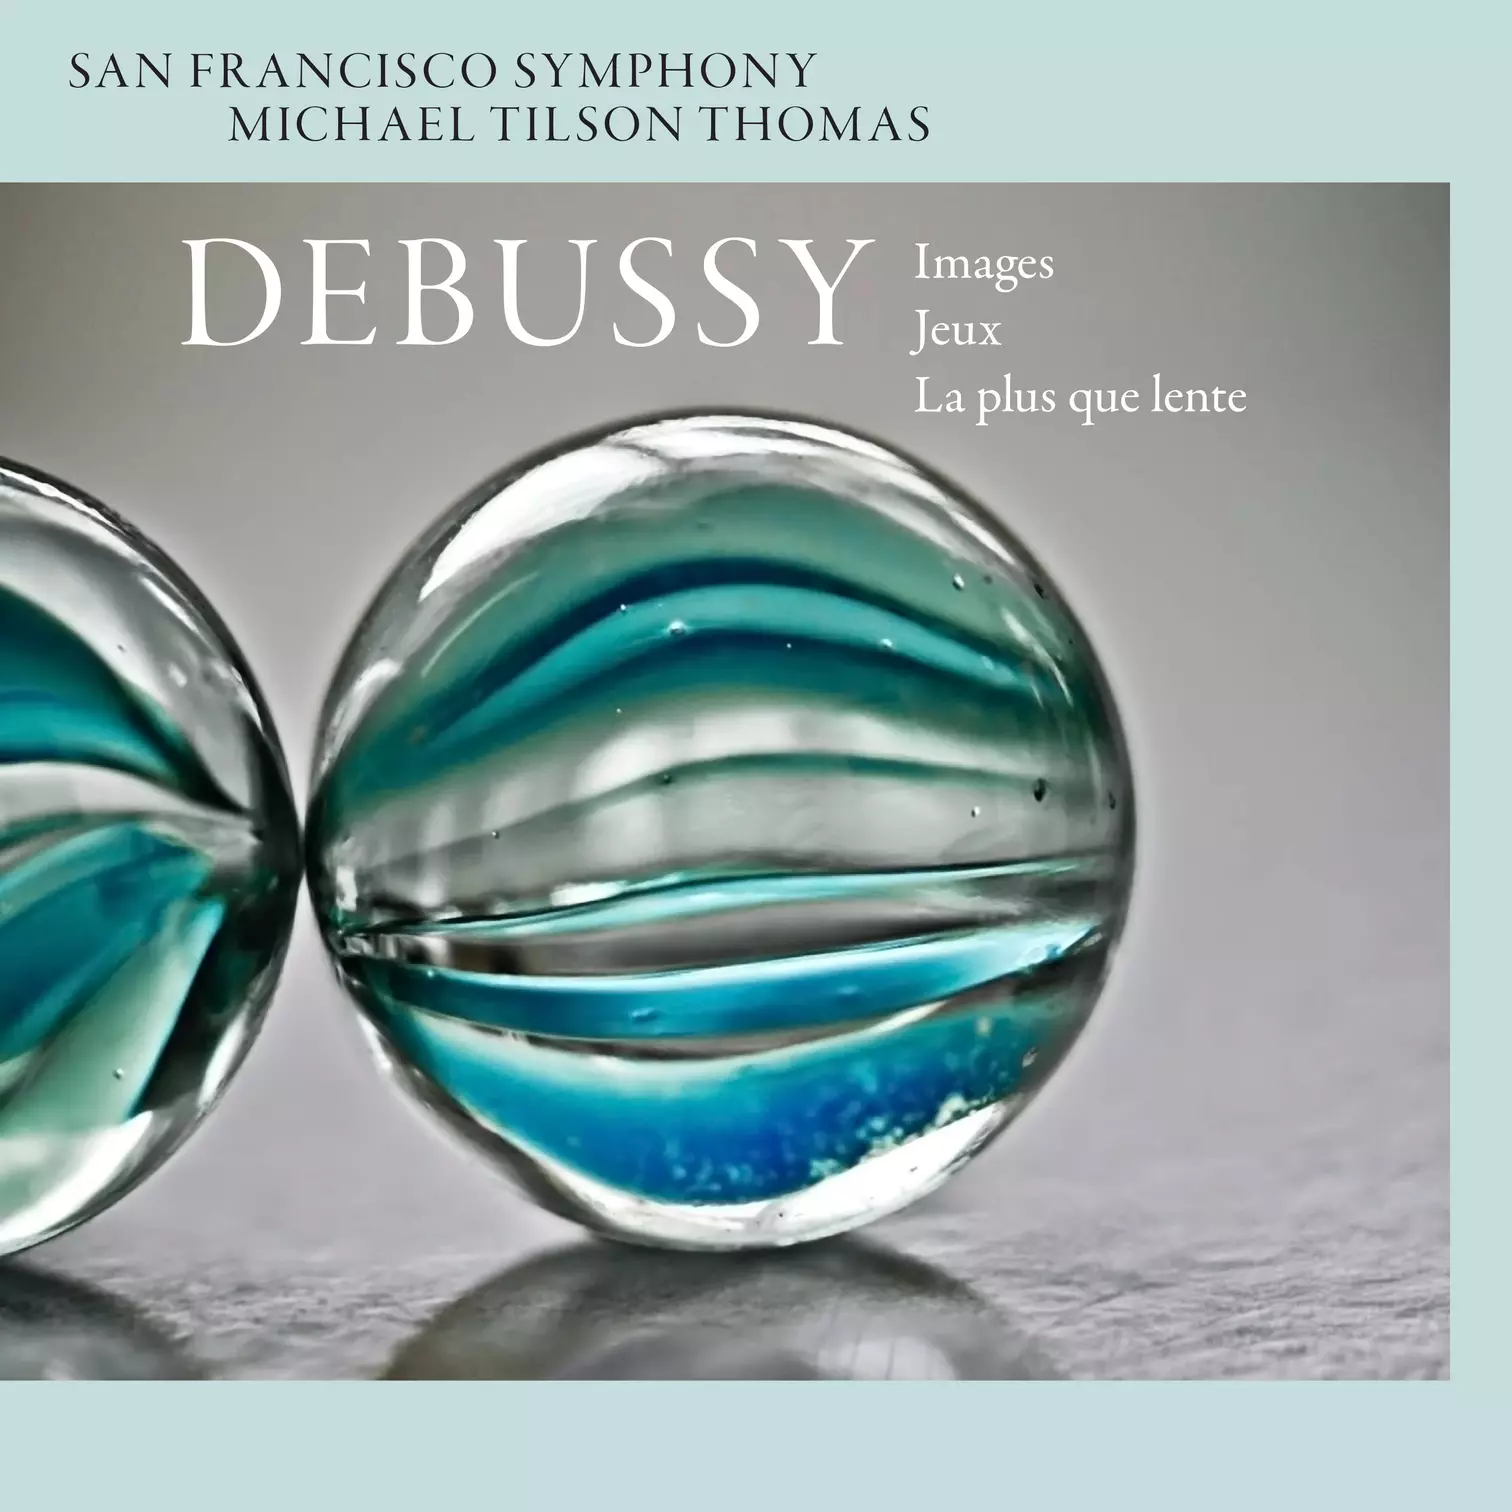 Debussy: Images, Jeux, & La plus que lente